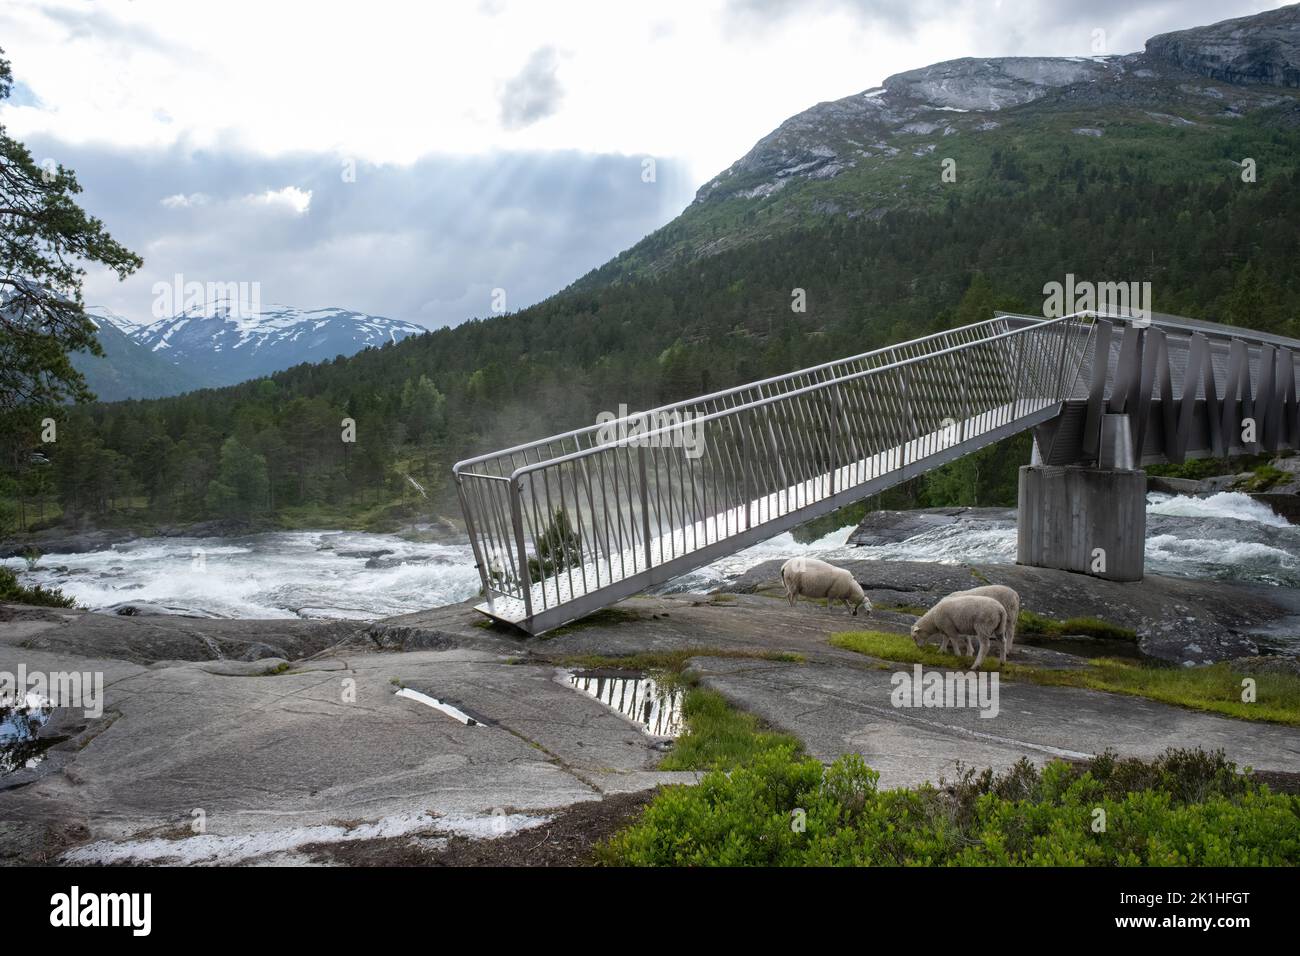 Paysages merveilleux en Norvège. Vestland. Magnifique paysage de la cascade de Likholefossen et de la rivière Eldalselva Gaula. Montagne, arbres et moutons à l'arrière Banque D'Images